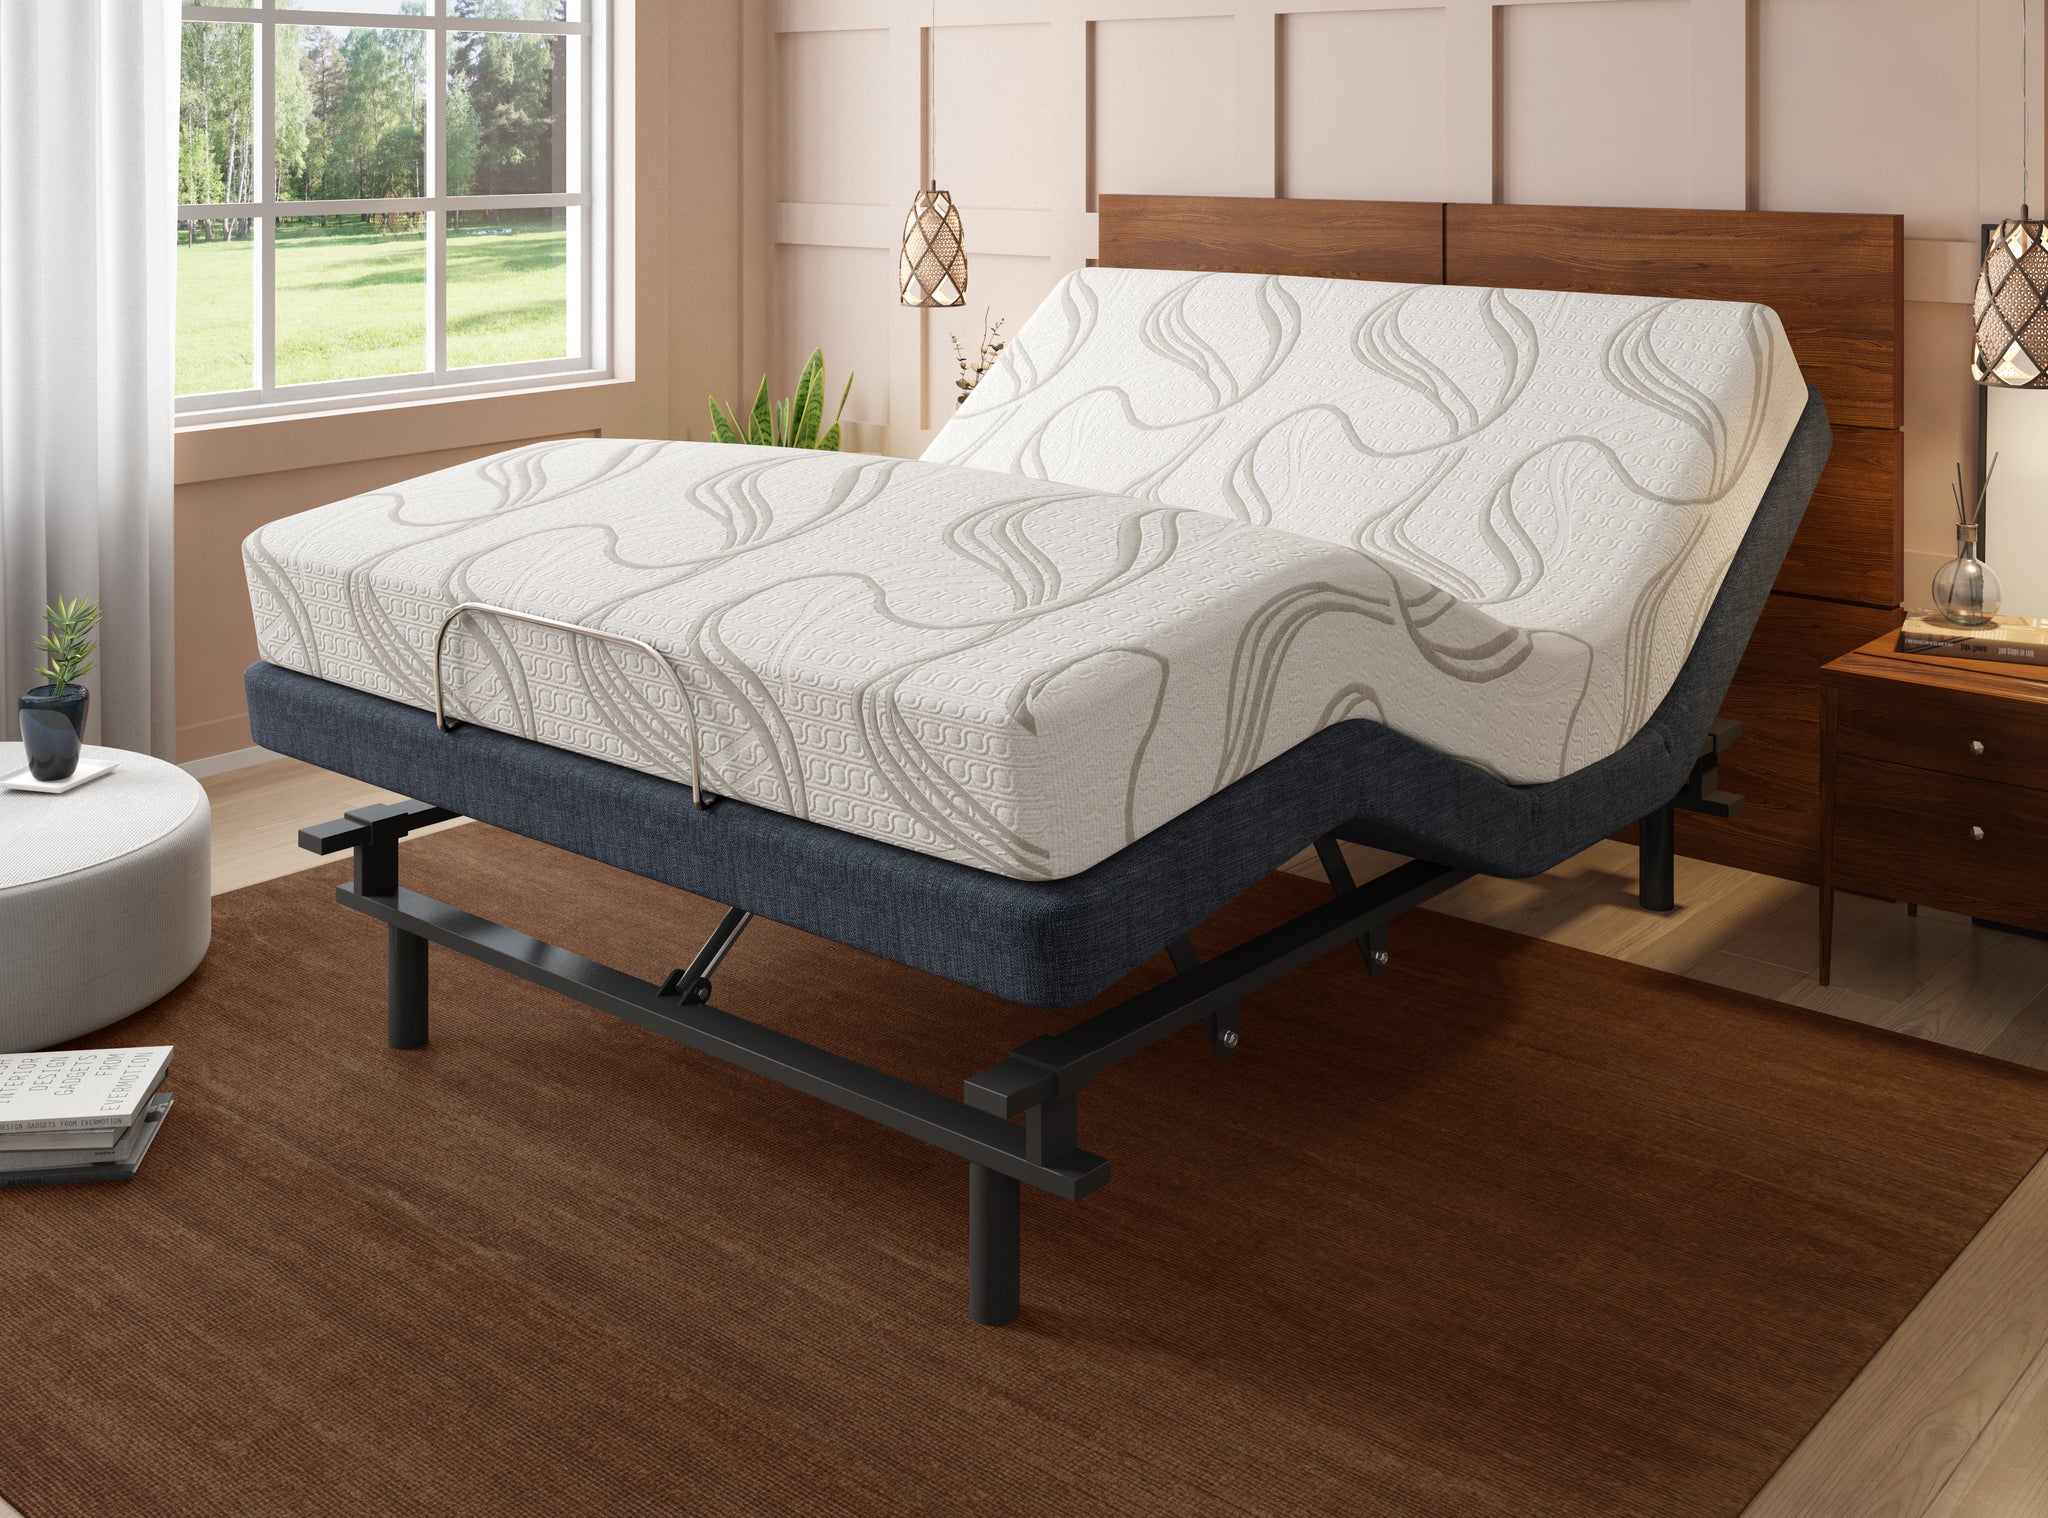 sleep design marietta lux mattress